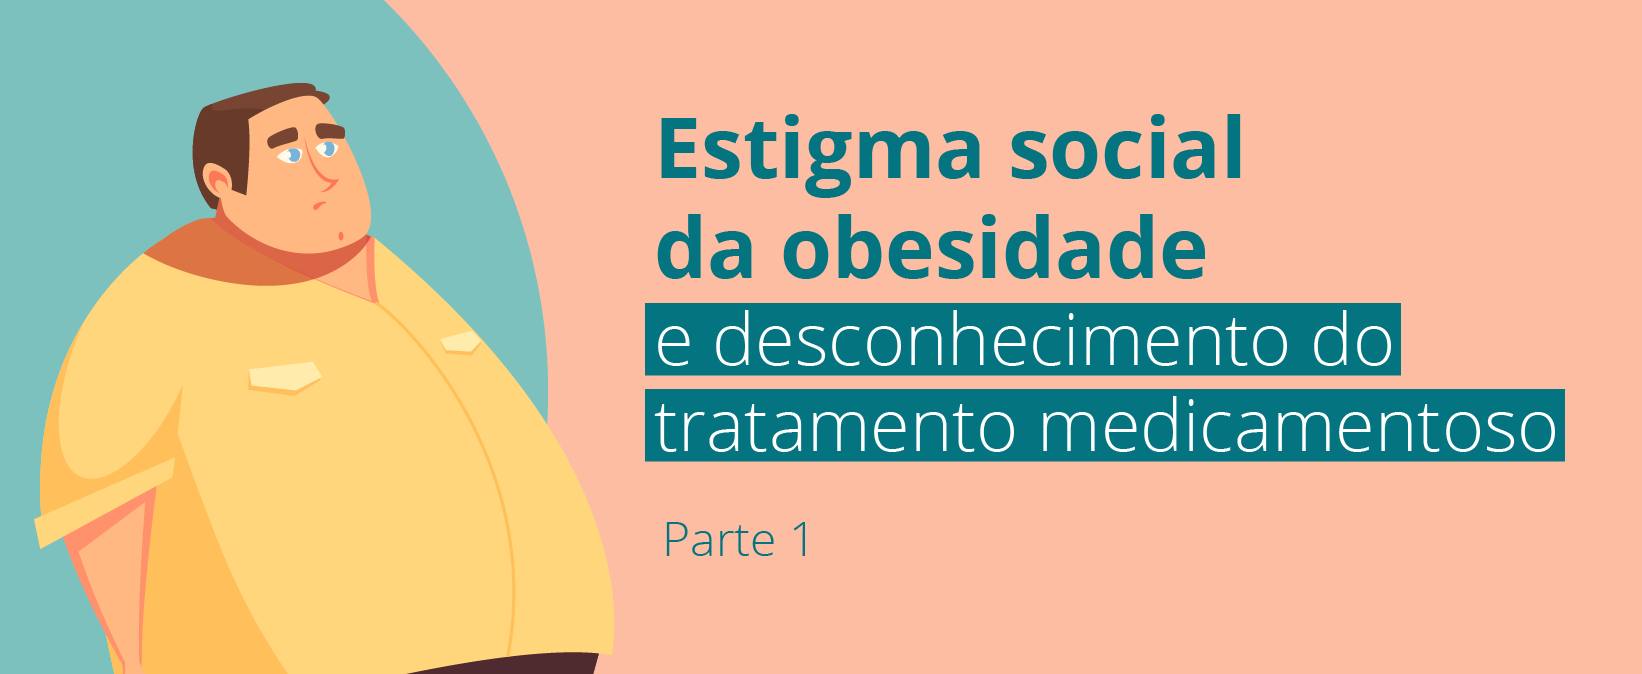 Estigma social da obesidade e desconhecimento do tratamento medicamentoso - 01